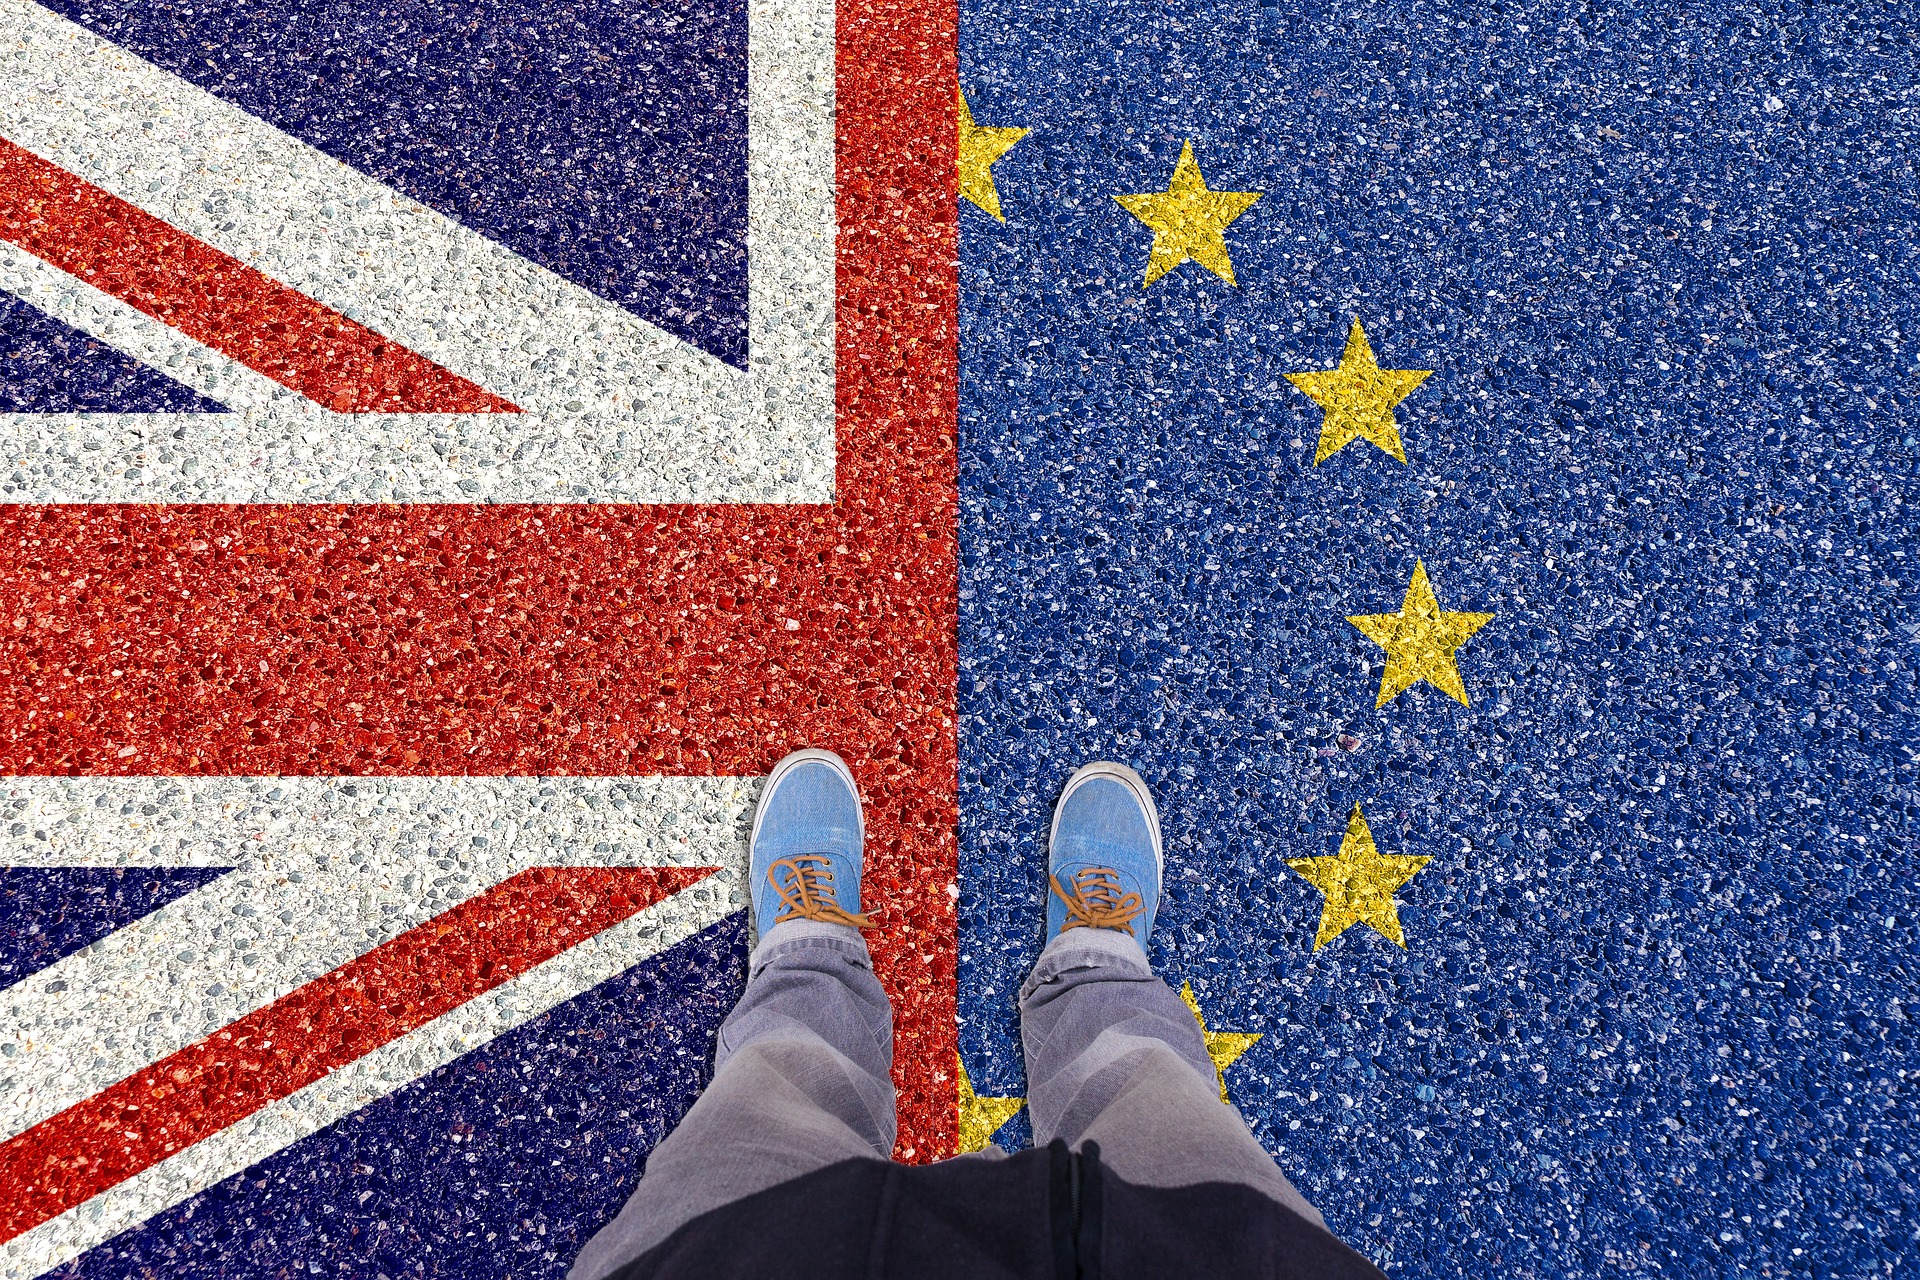 Obraz przestawia buty człowieka stojącego na ziemi na której nadrukowana jest flaga UE i Wielkiej Brytanii